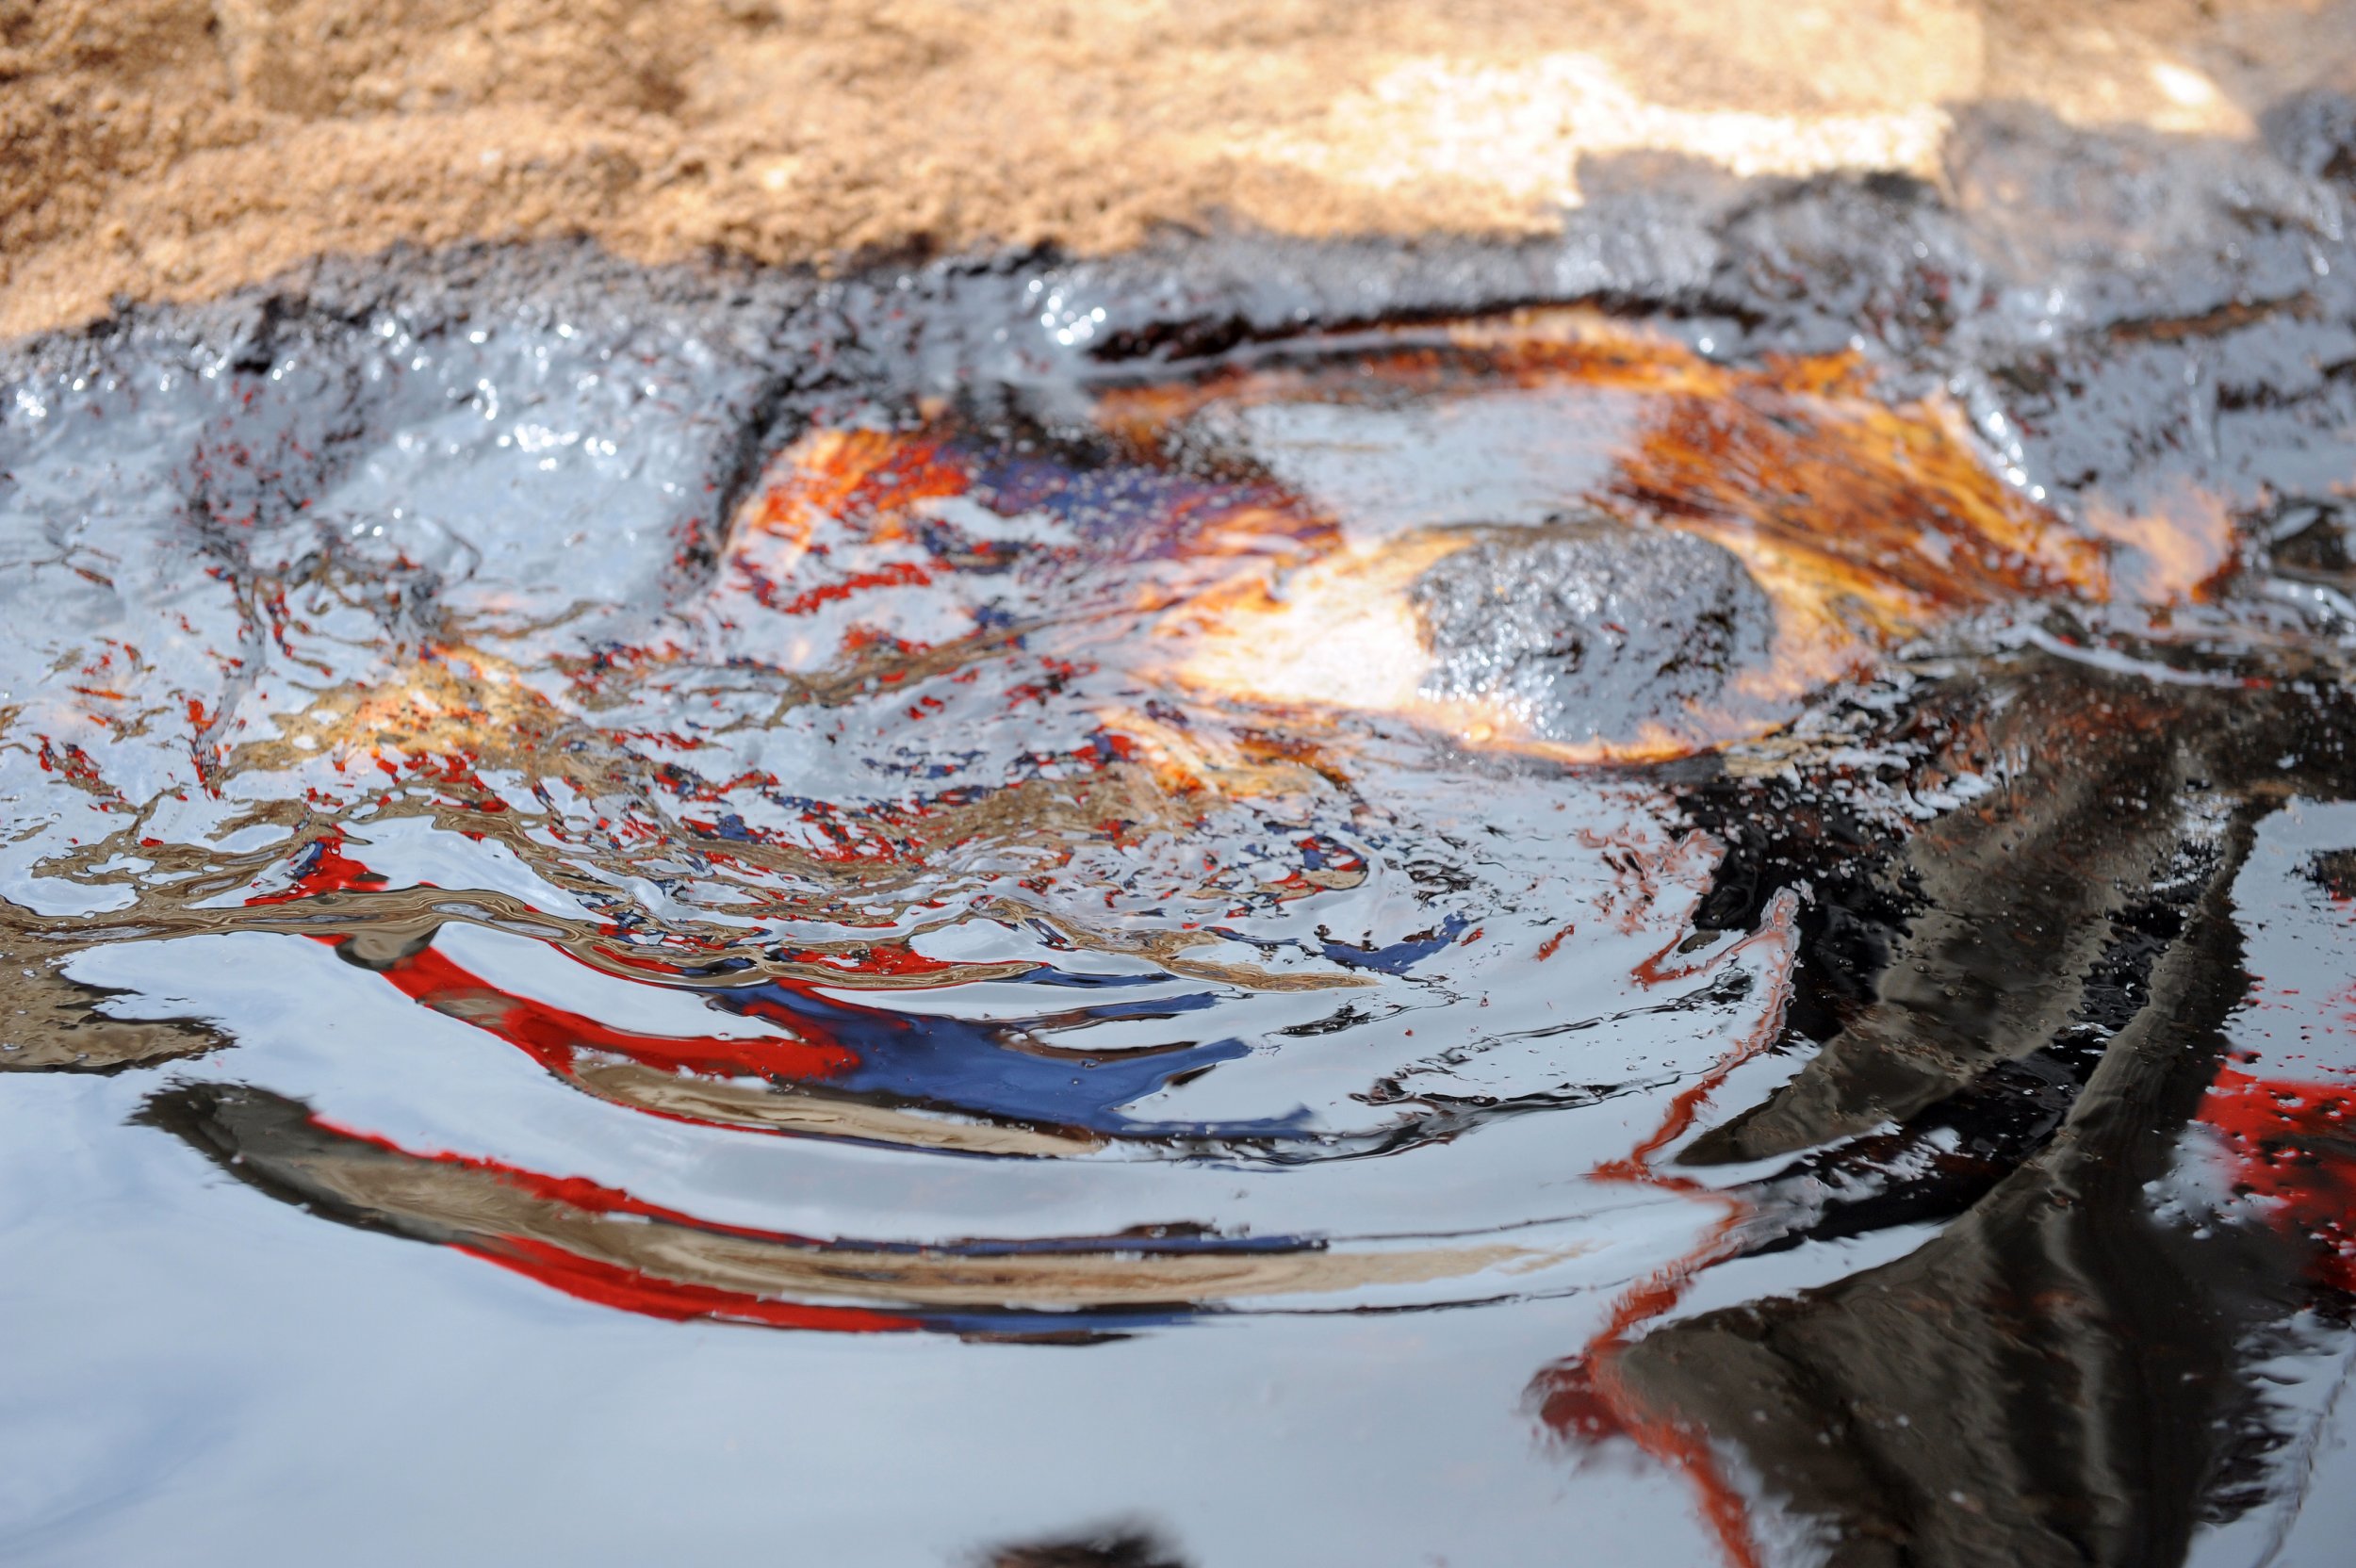 Niger Delta oil spill